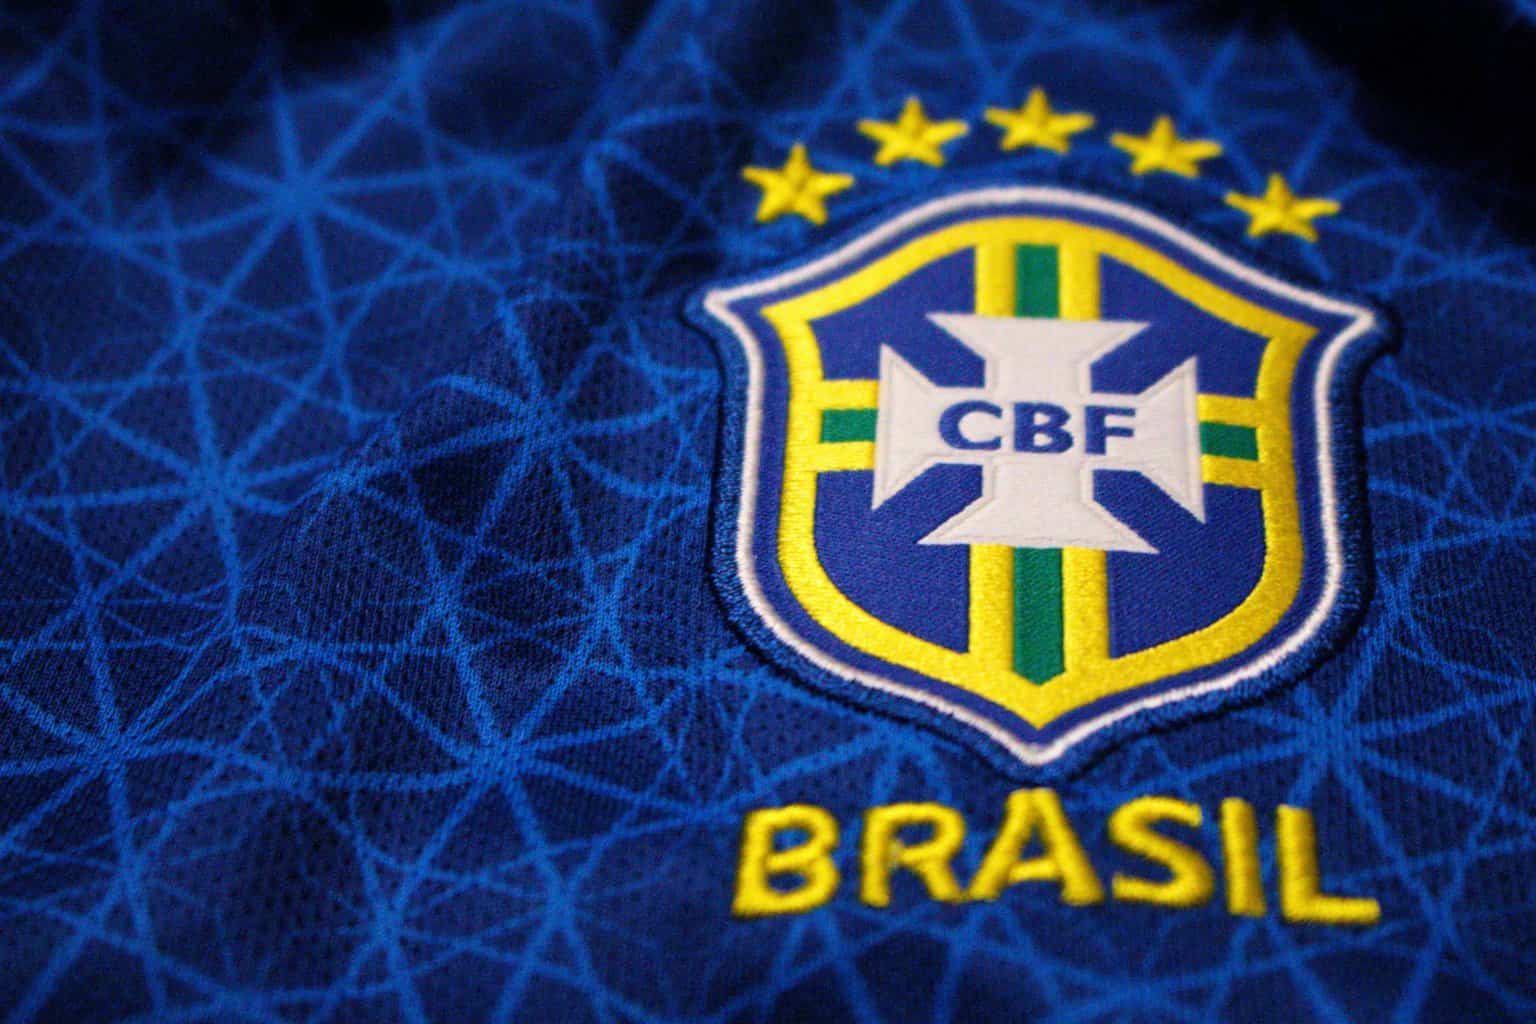 brazilian, sports betting, football